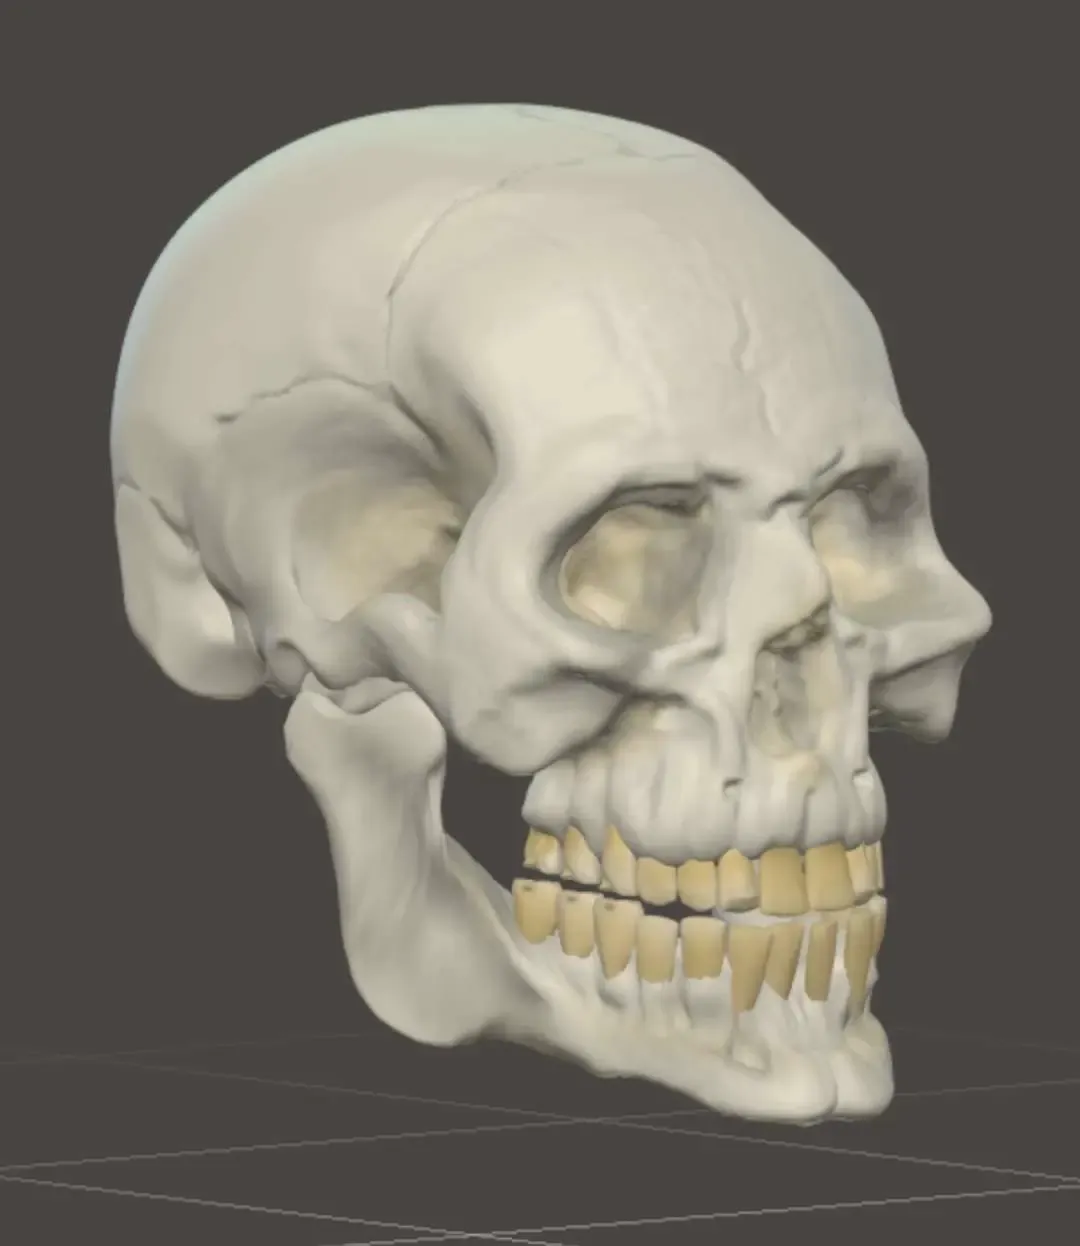 skull for Halloween 